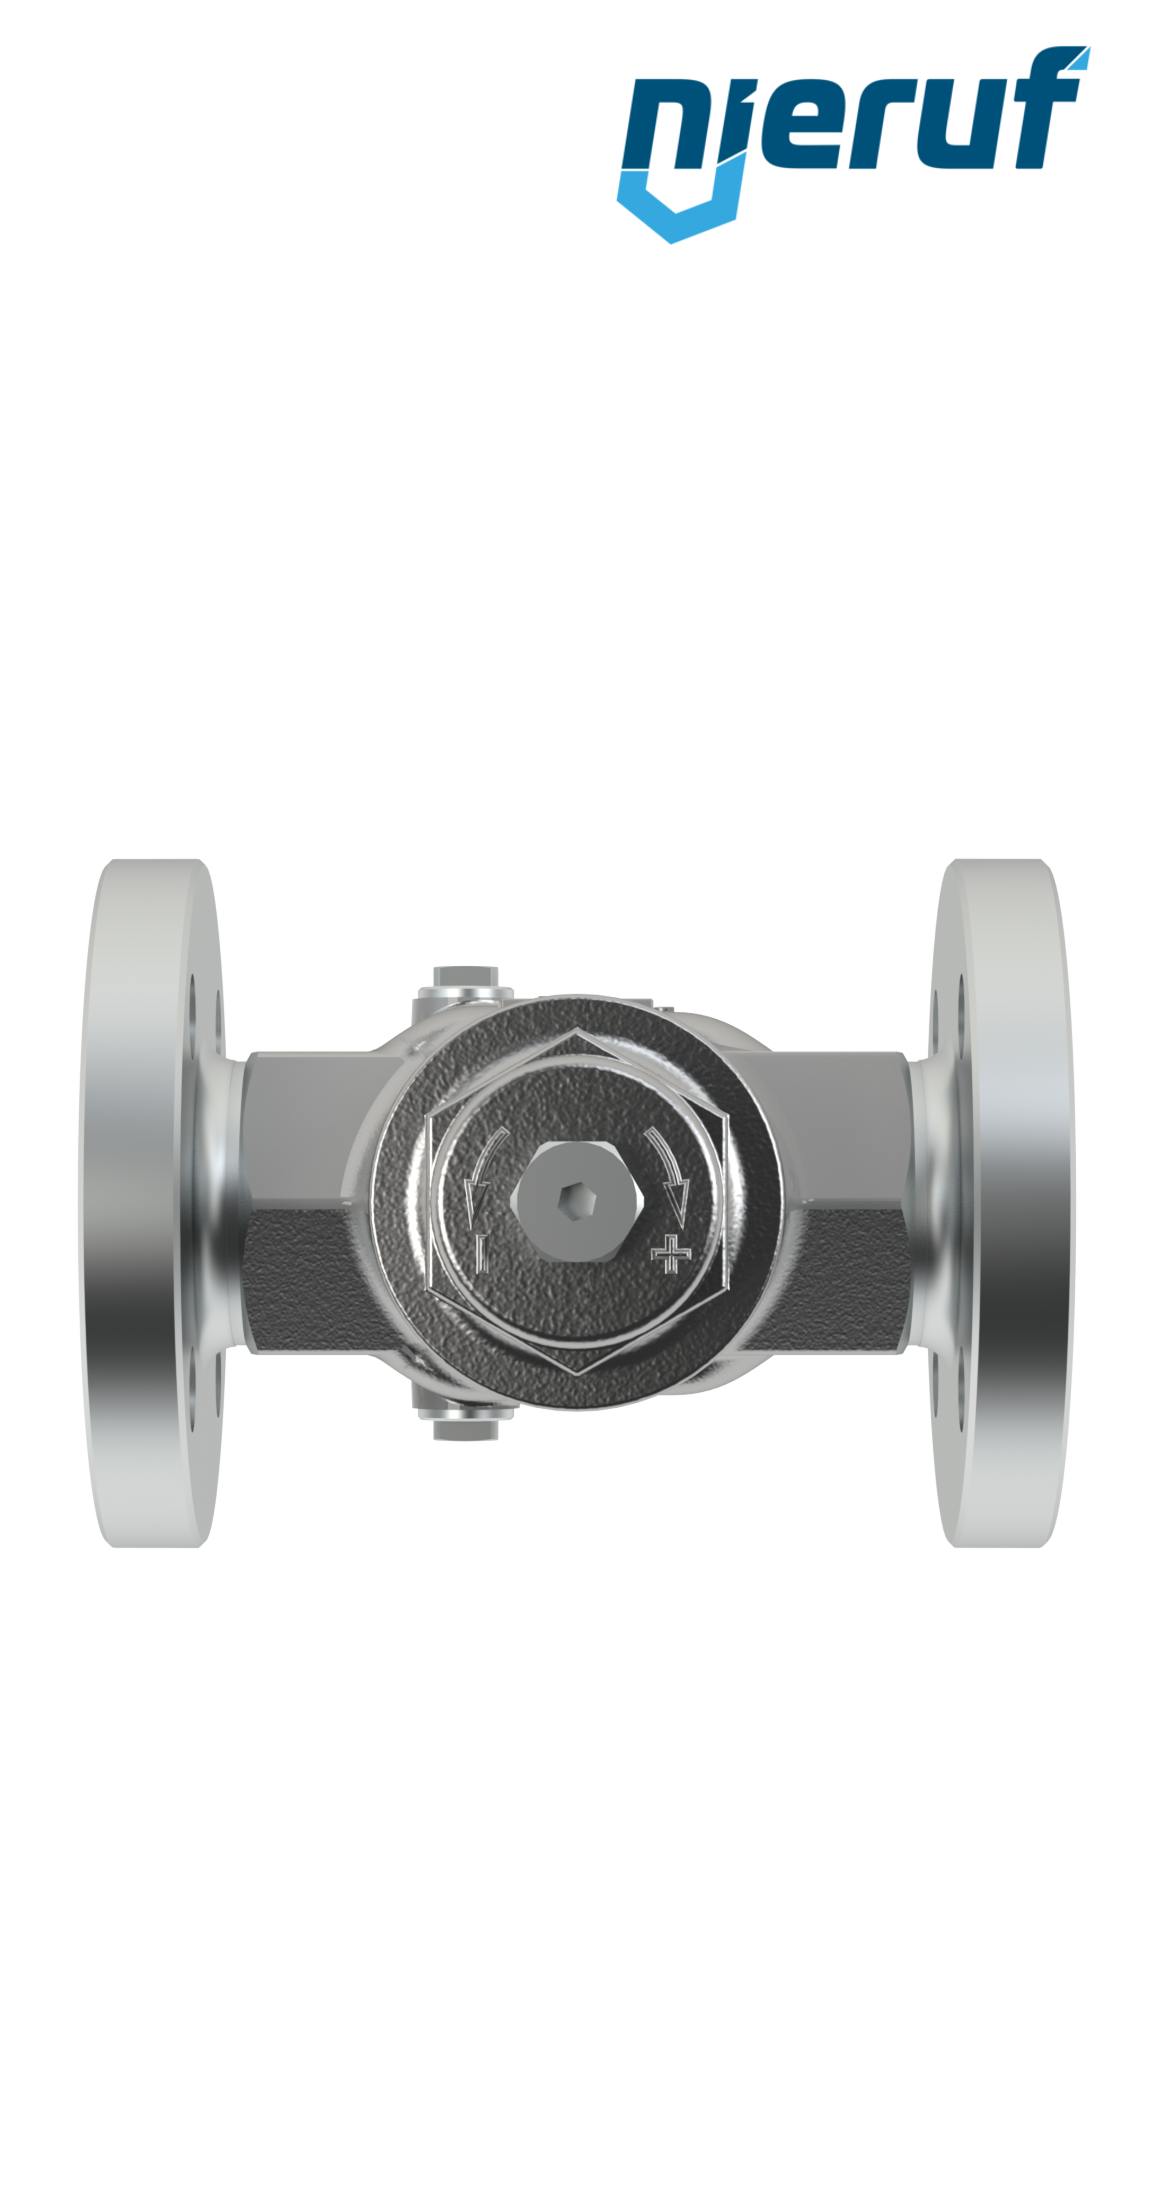 Piston-pressure reducing valve DN15 DM11 flange ANSI 150 stainless steel FPM / FKM 2.0 - 20.0 bar